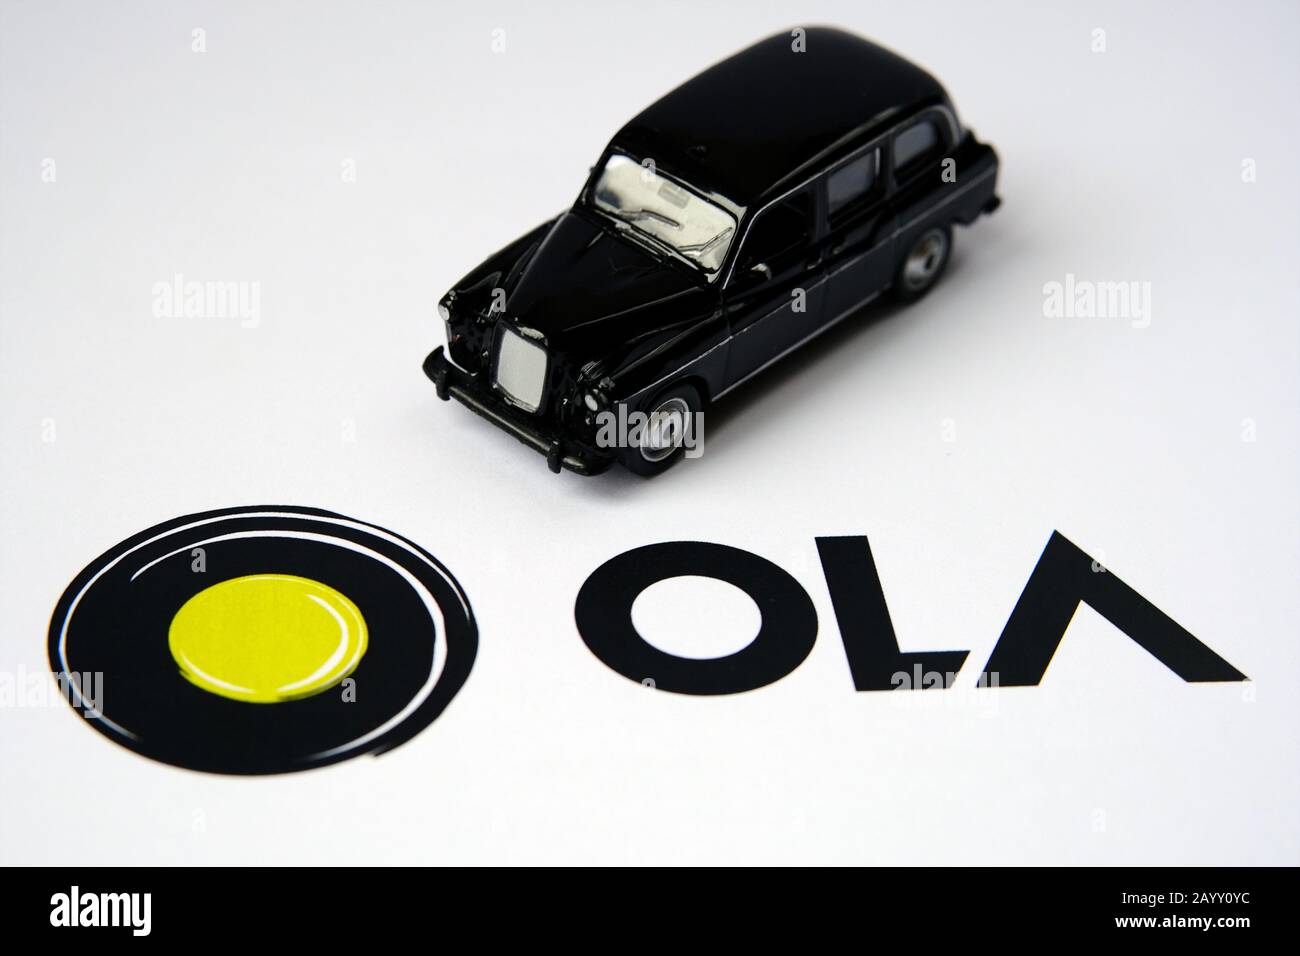 Logotipo de la aplicación Ola en un folleto en papel y cabina negra sobre fondo difuminado. Ola Cabs es una compañía de viajes compartidos. Enfoque selectivo. Foto de stock